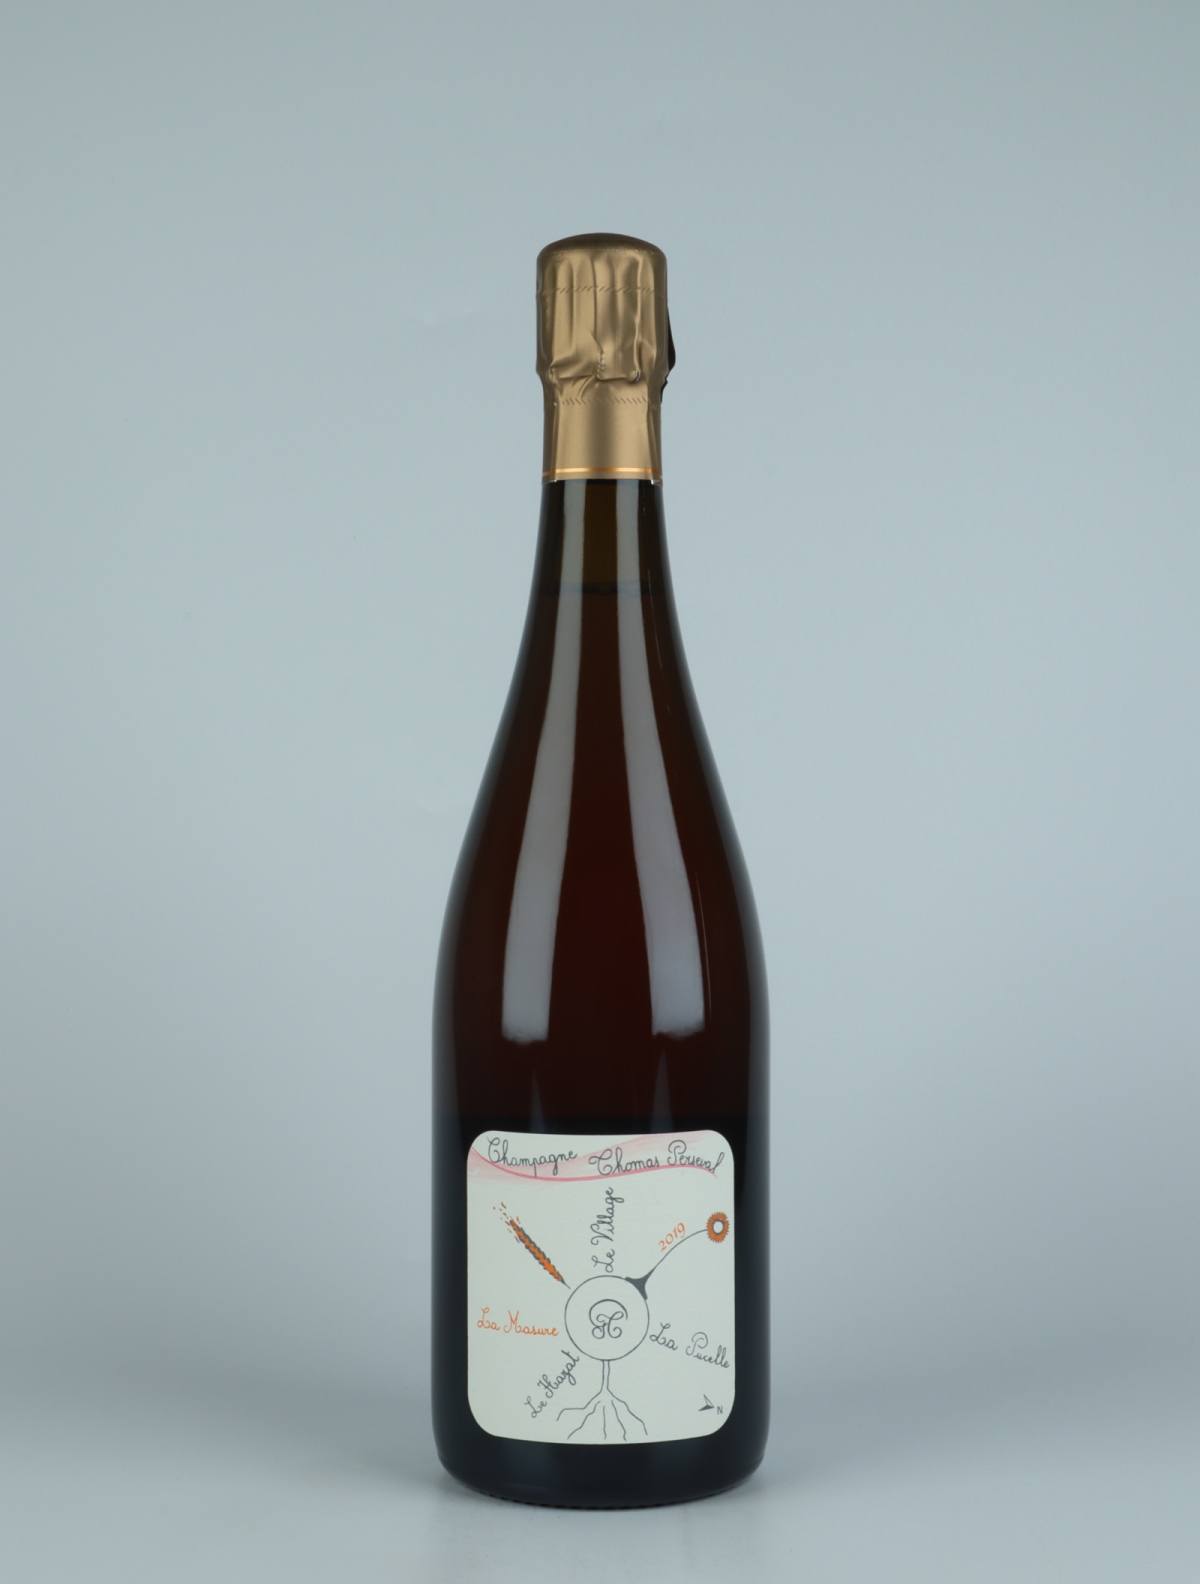 En flaske 2019 Chamery 1. Cru - La Masure - Rosé de macération Mousserende fra Thomas Perseval, Champagne i Frankrig